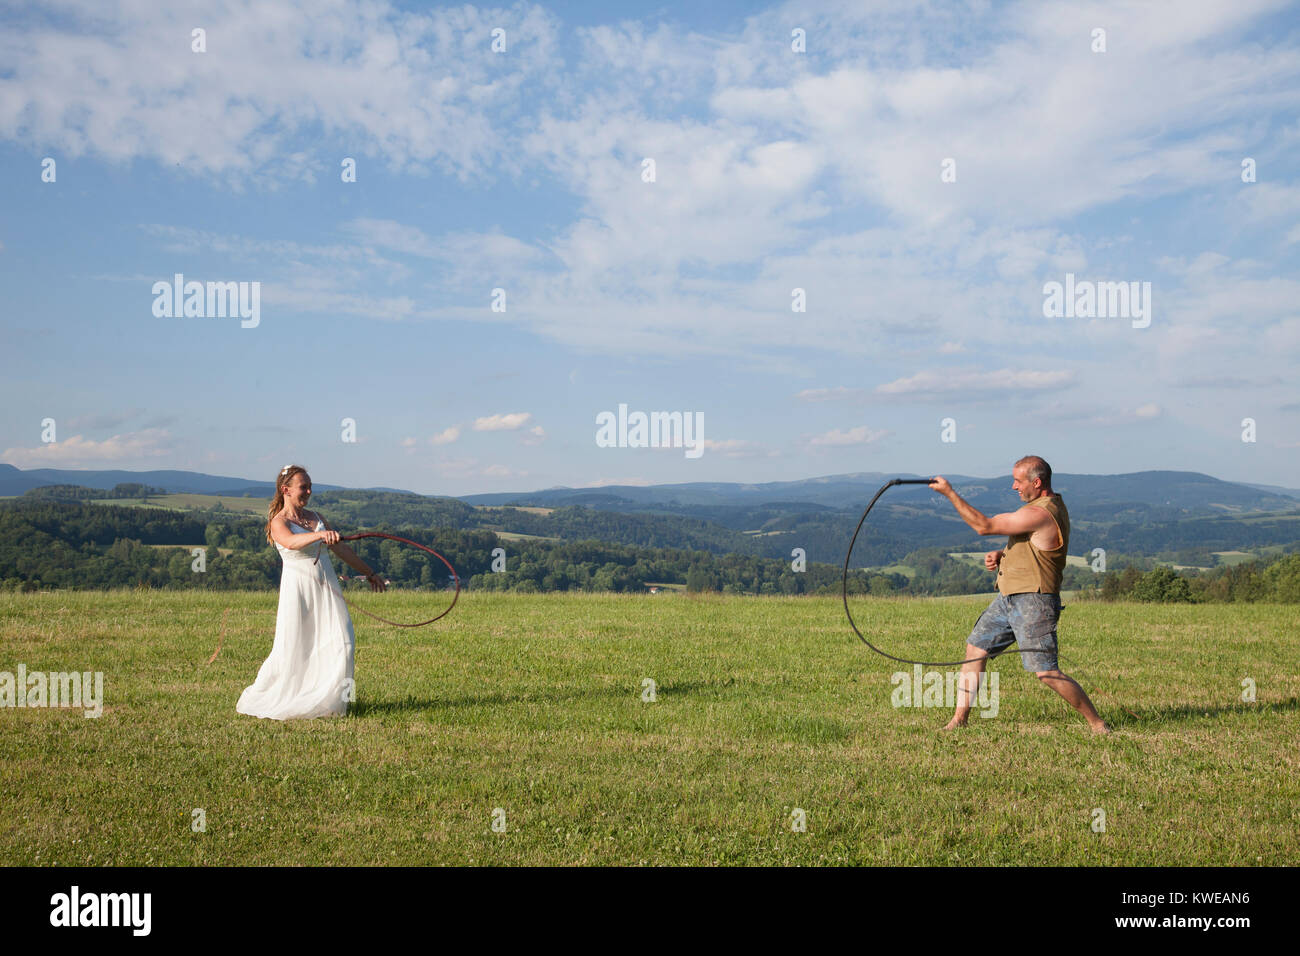 Der Mann und die Frau mit Hochzeit Kleid am Hochzeitstag in der Ausbildung ein Pferd Peitsche auf die grüne Wiese Wiese über Betrachtung großen Landschaft im Sommer. Stockfoto